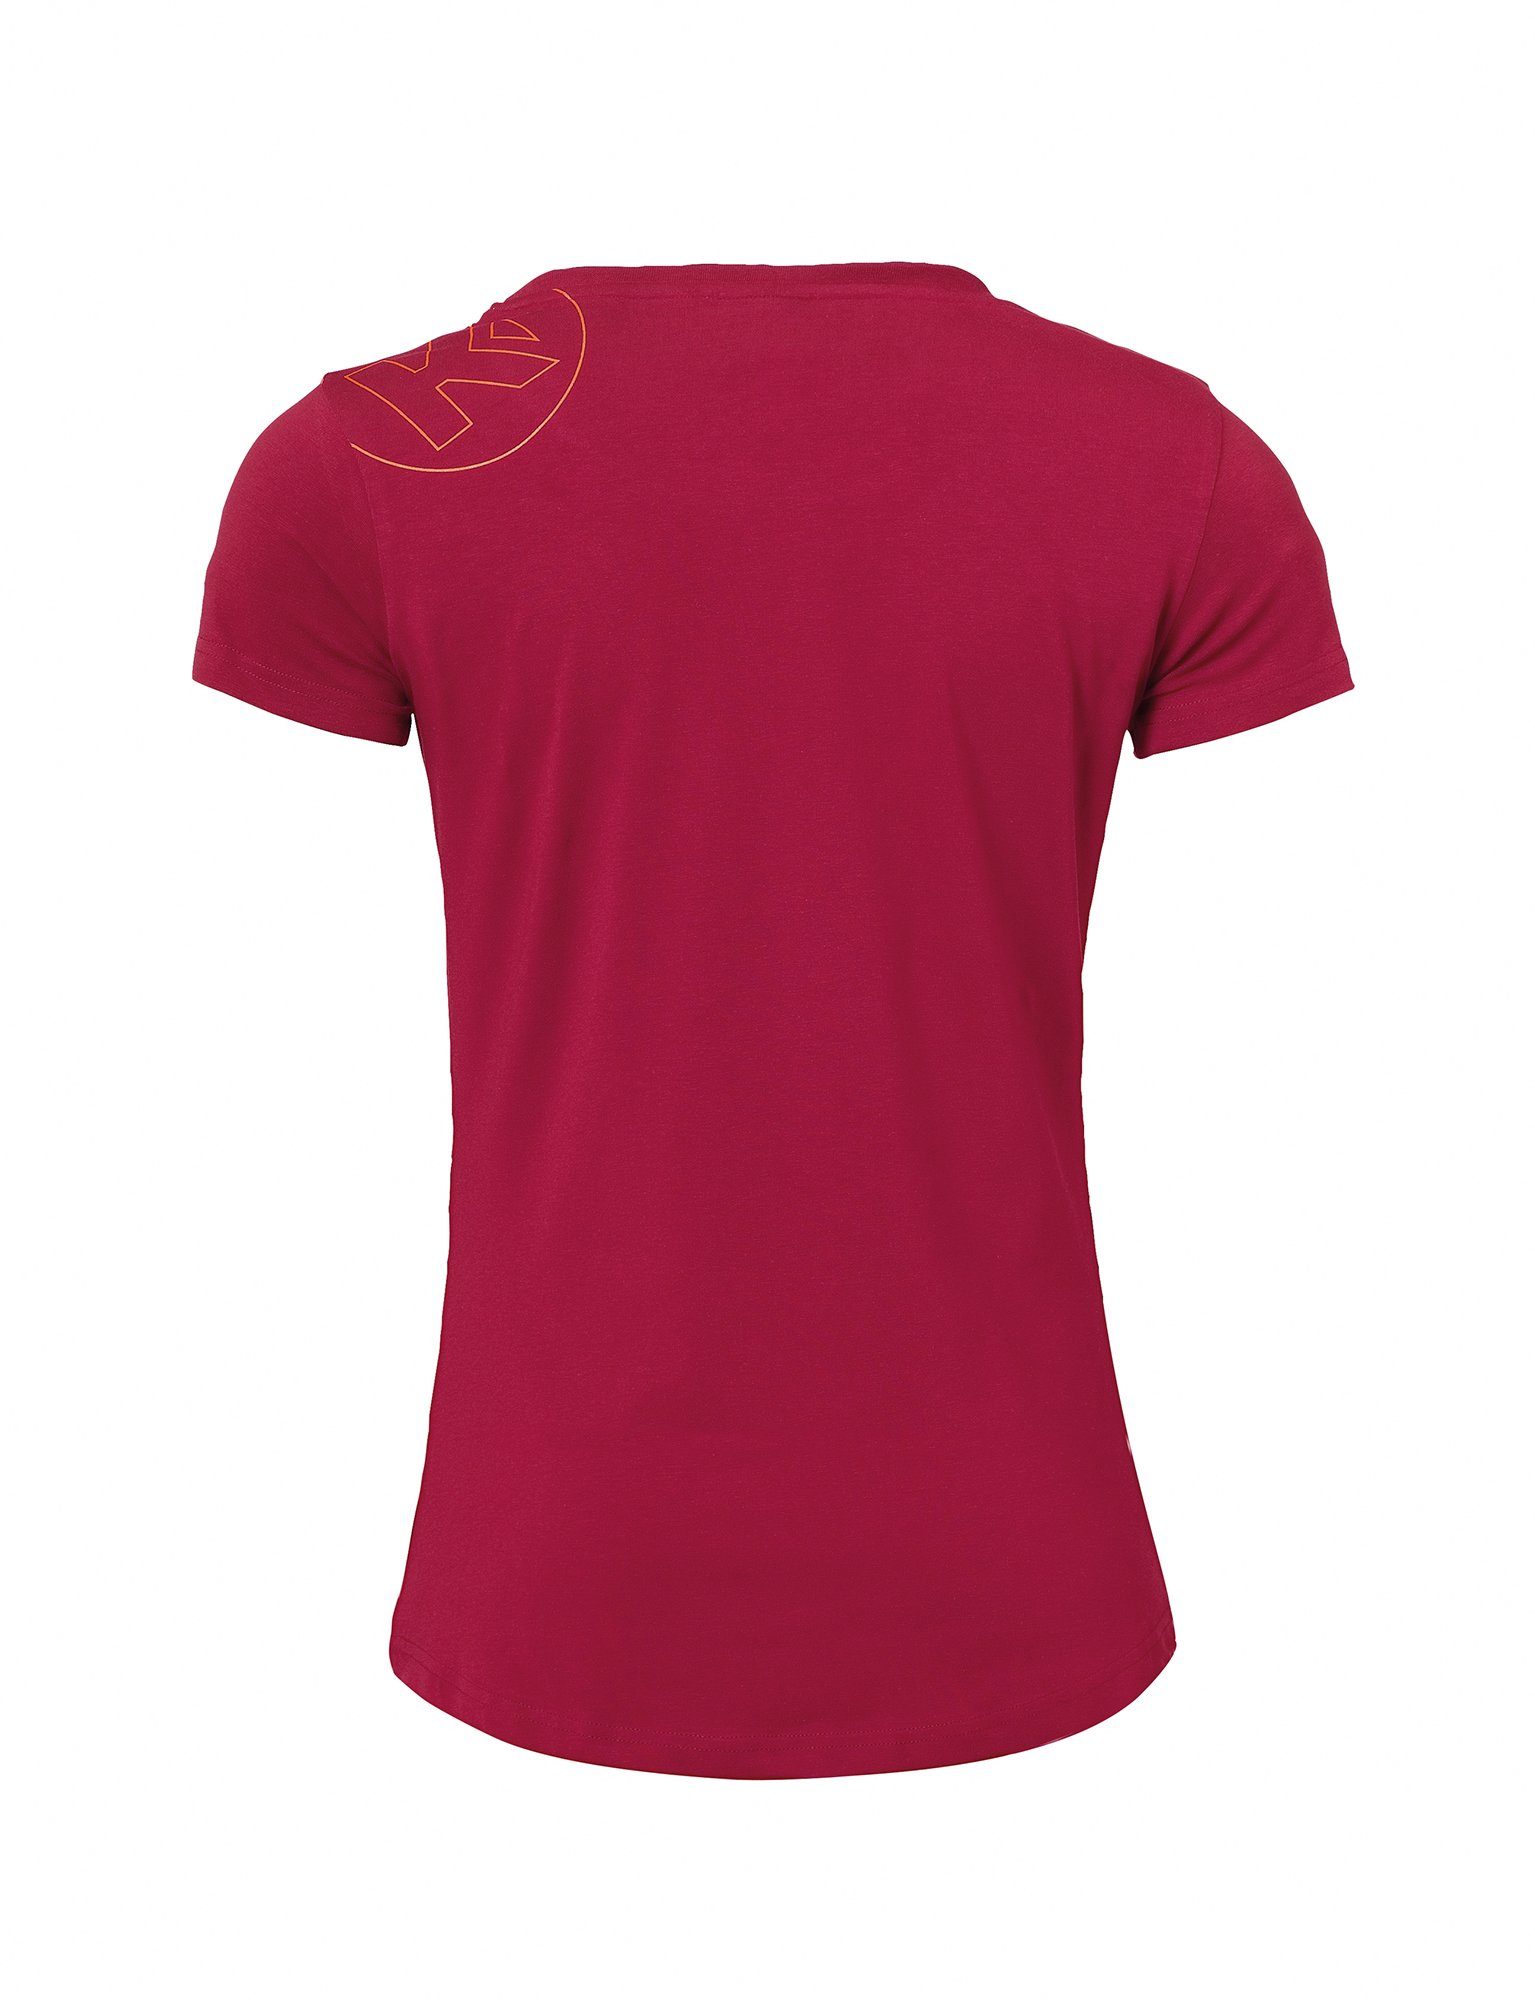 Kurzarmshirt Shirt GRAPHIC T-SHIRT GIRLS Kempa deep Kempa elastisch rot